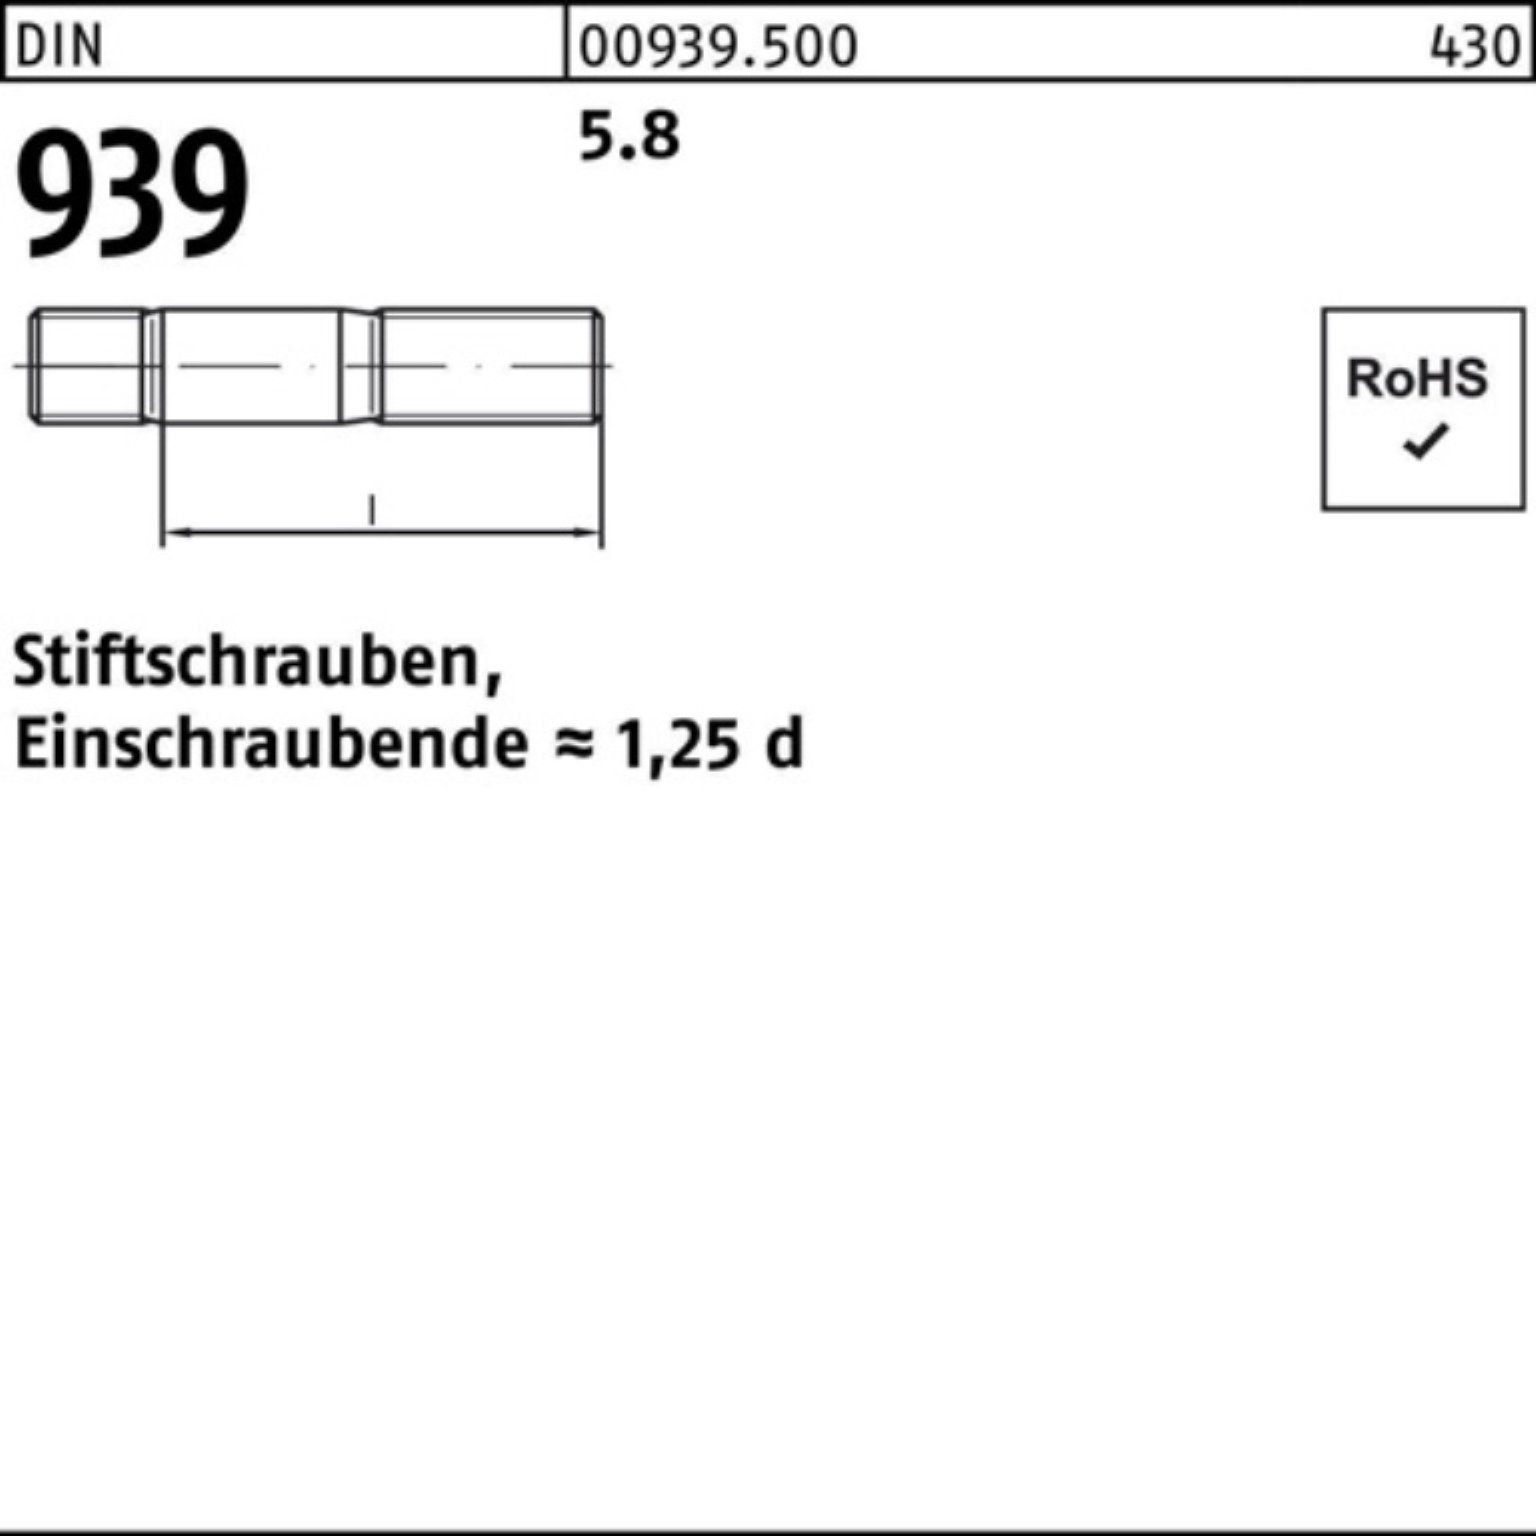 Reyher Stiftschraube 100er 10 80 M24x S Stiftschraube 939 5.8 Einschraubende=1,25d Pack DIN